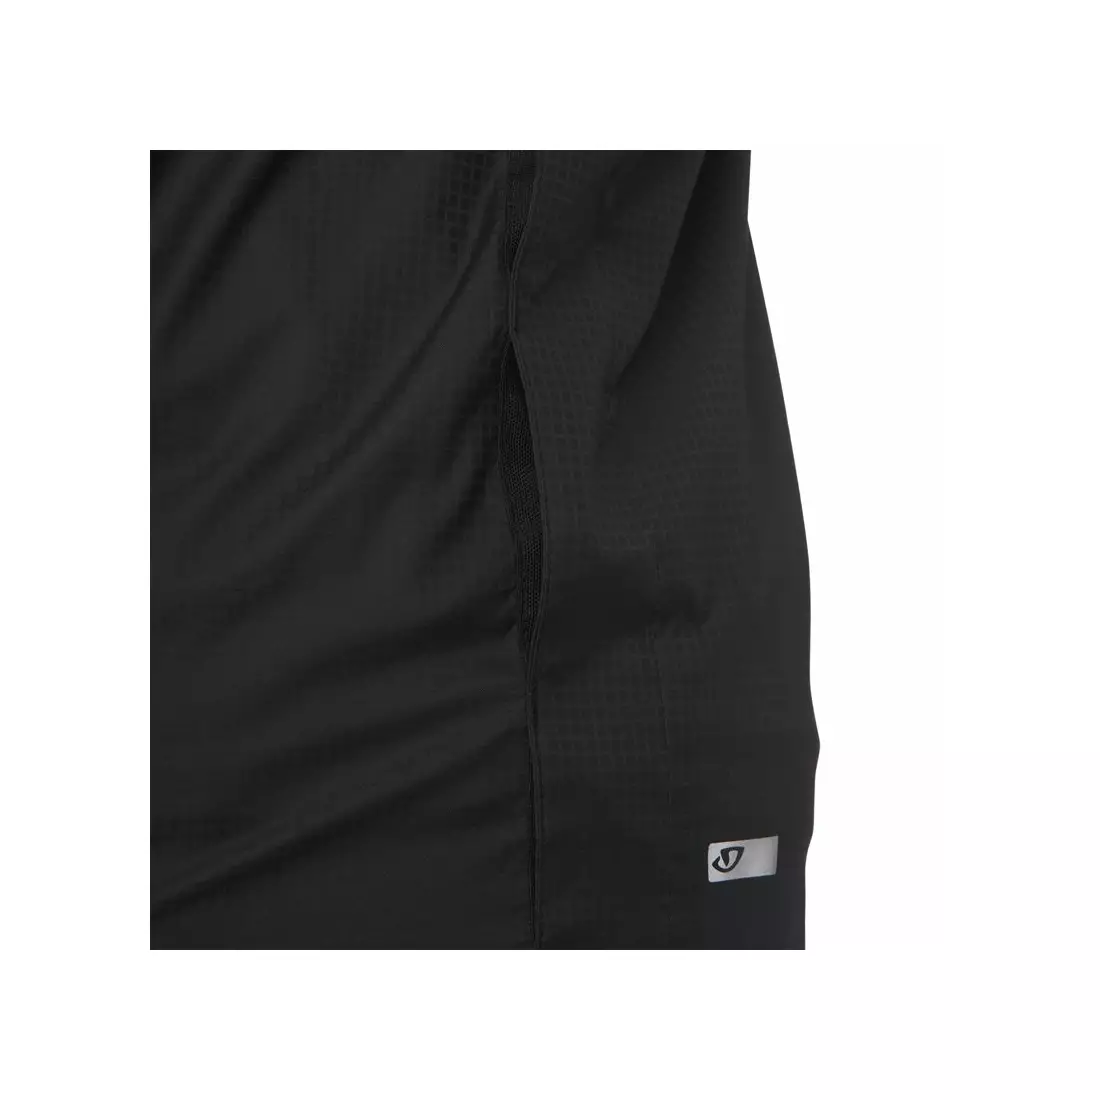 GIRO men's windbreaker jacket stow black GR-7096165